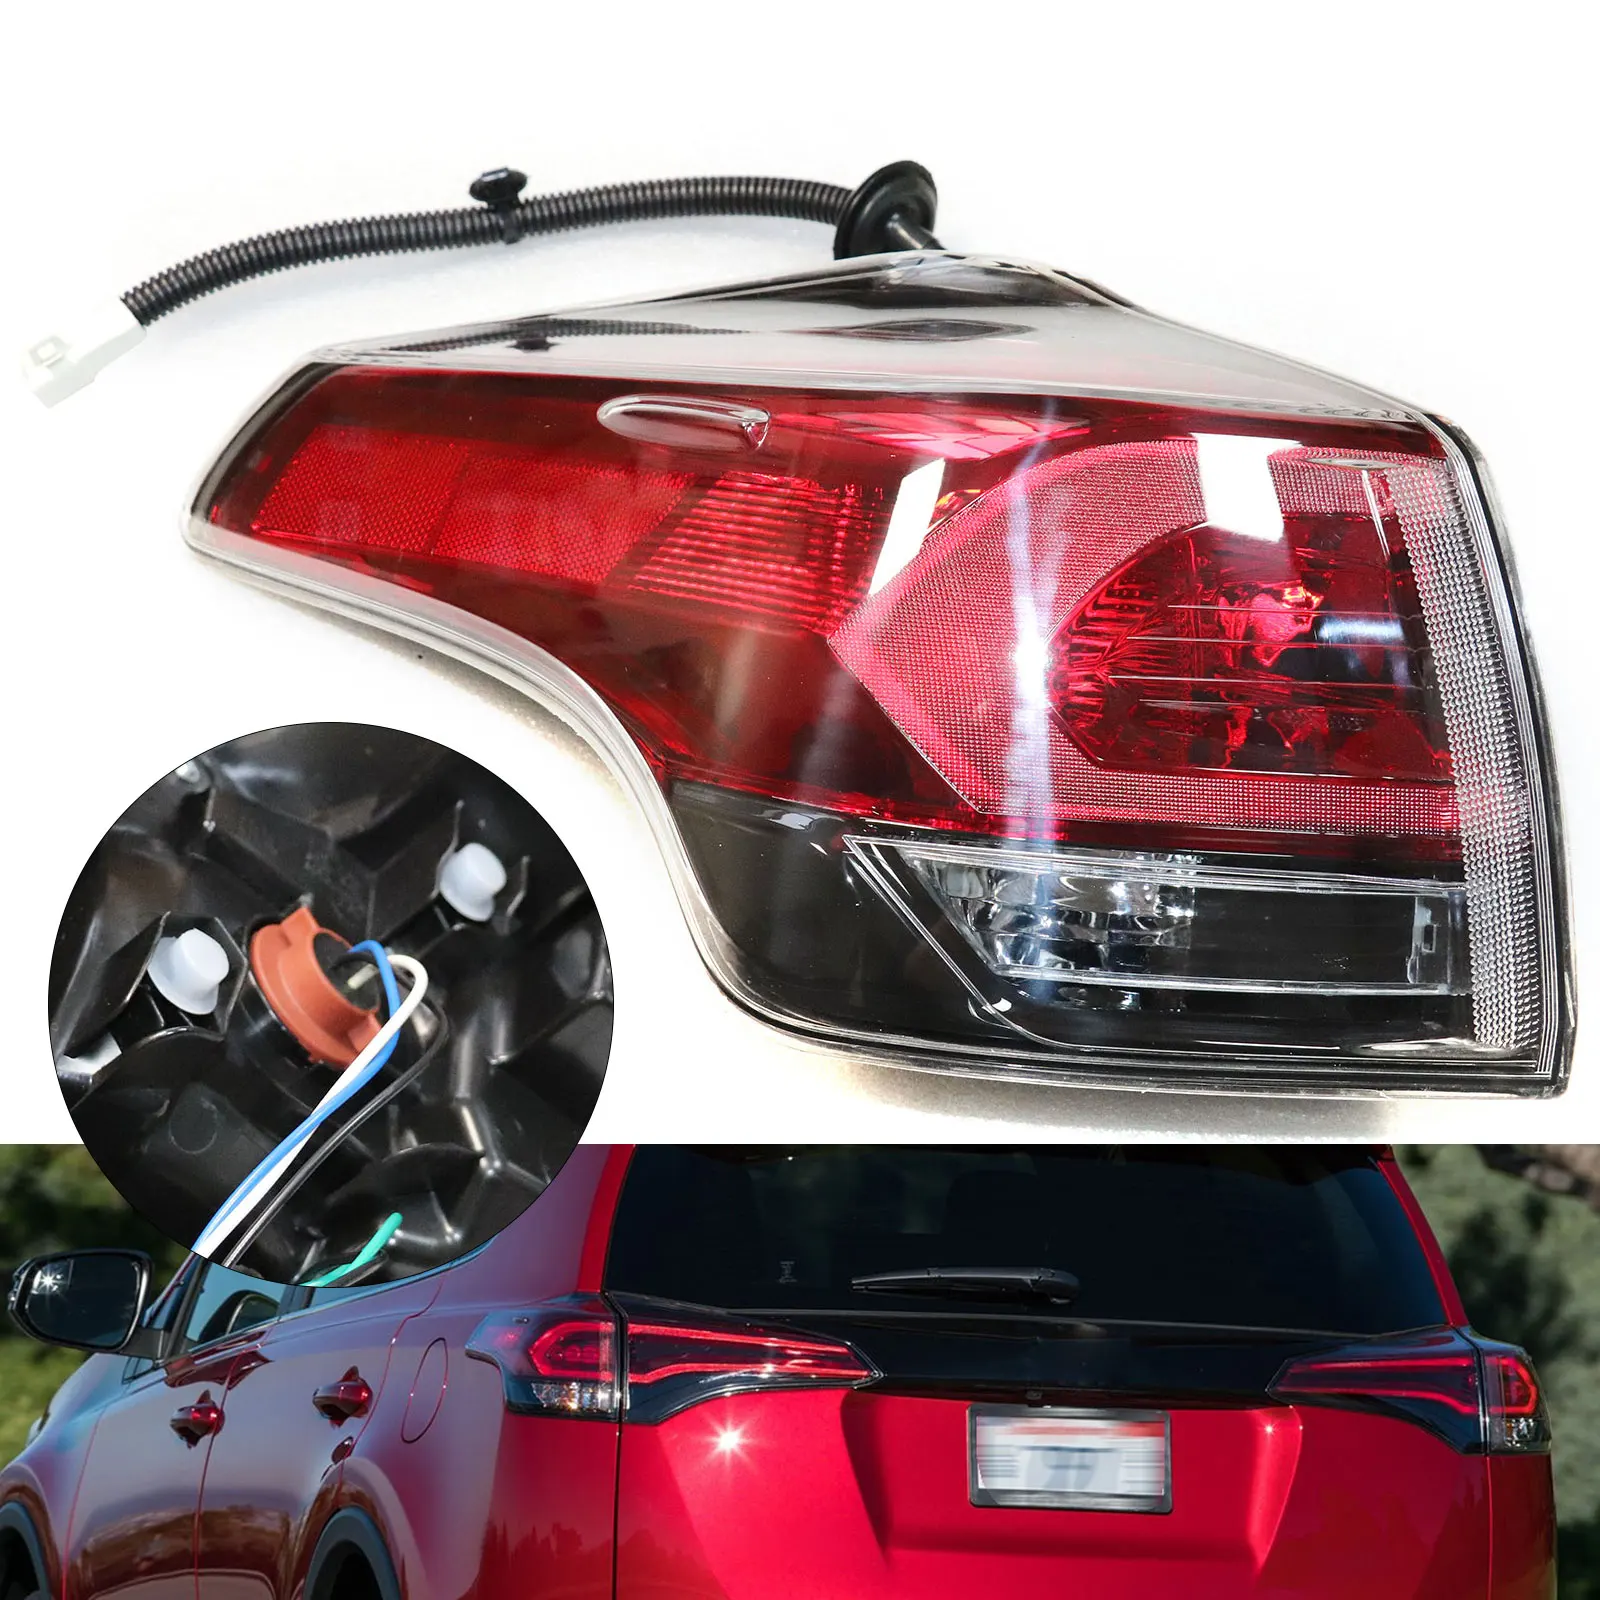 

Car Outer Rear Tail Light Left Side For TOYOTA RAV4 2016 2017 2018 Brake Fog Lamp Accessories Car Warning Running Light